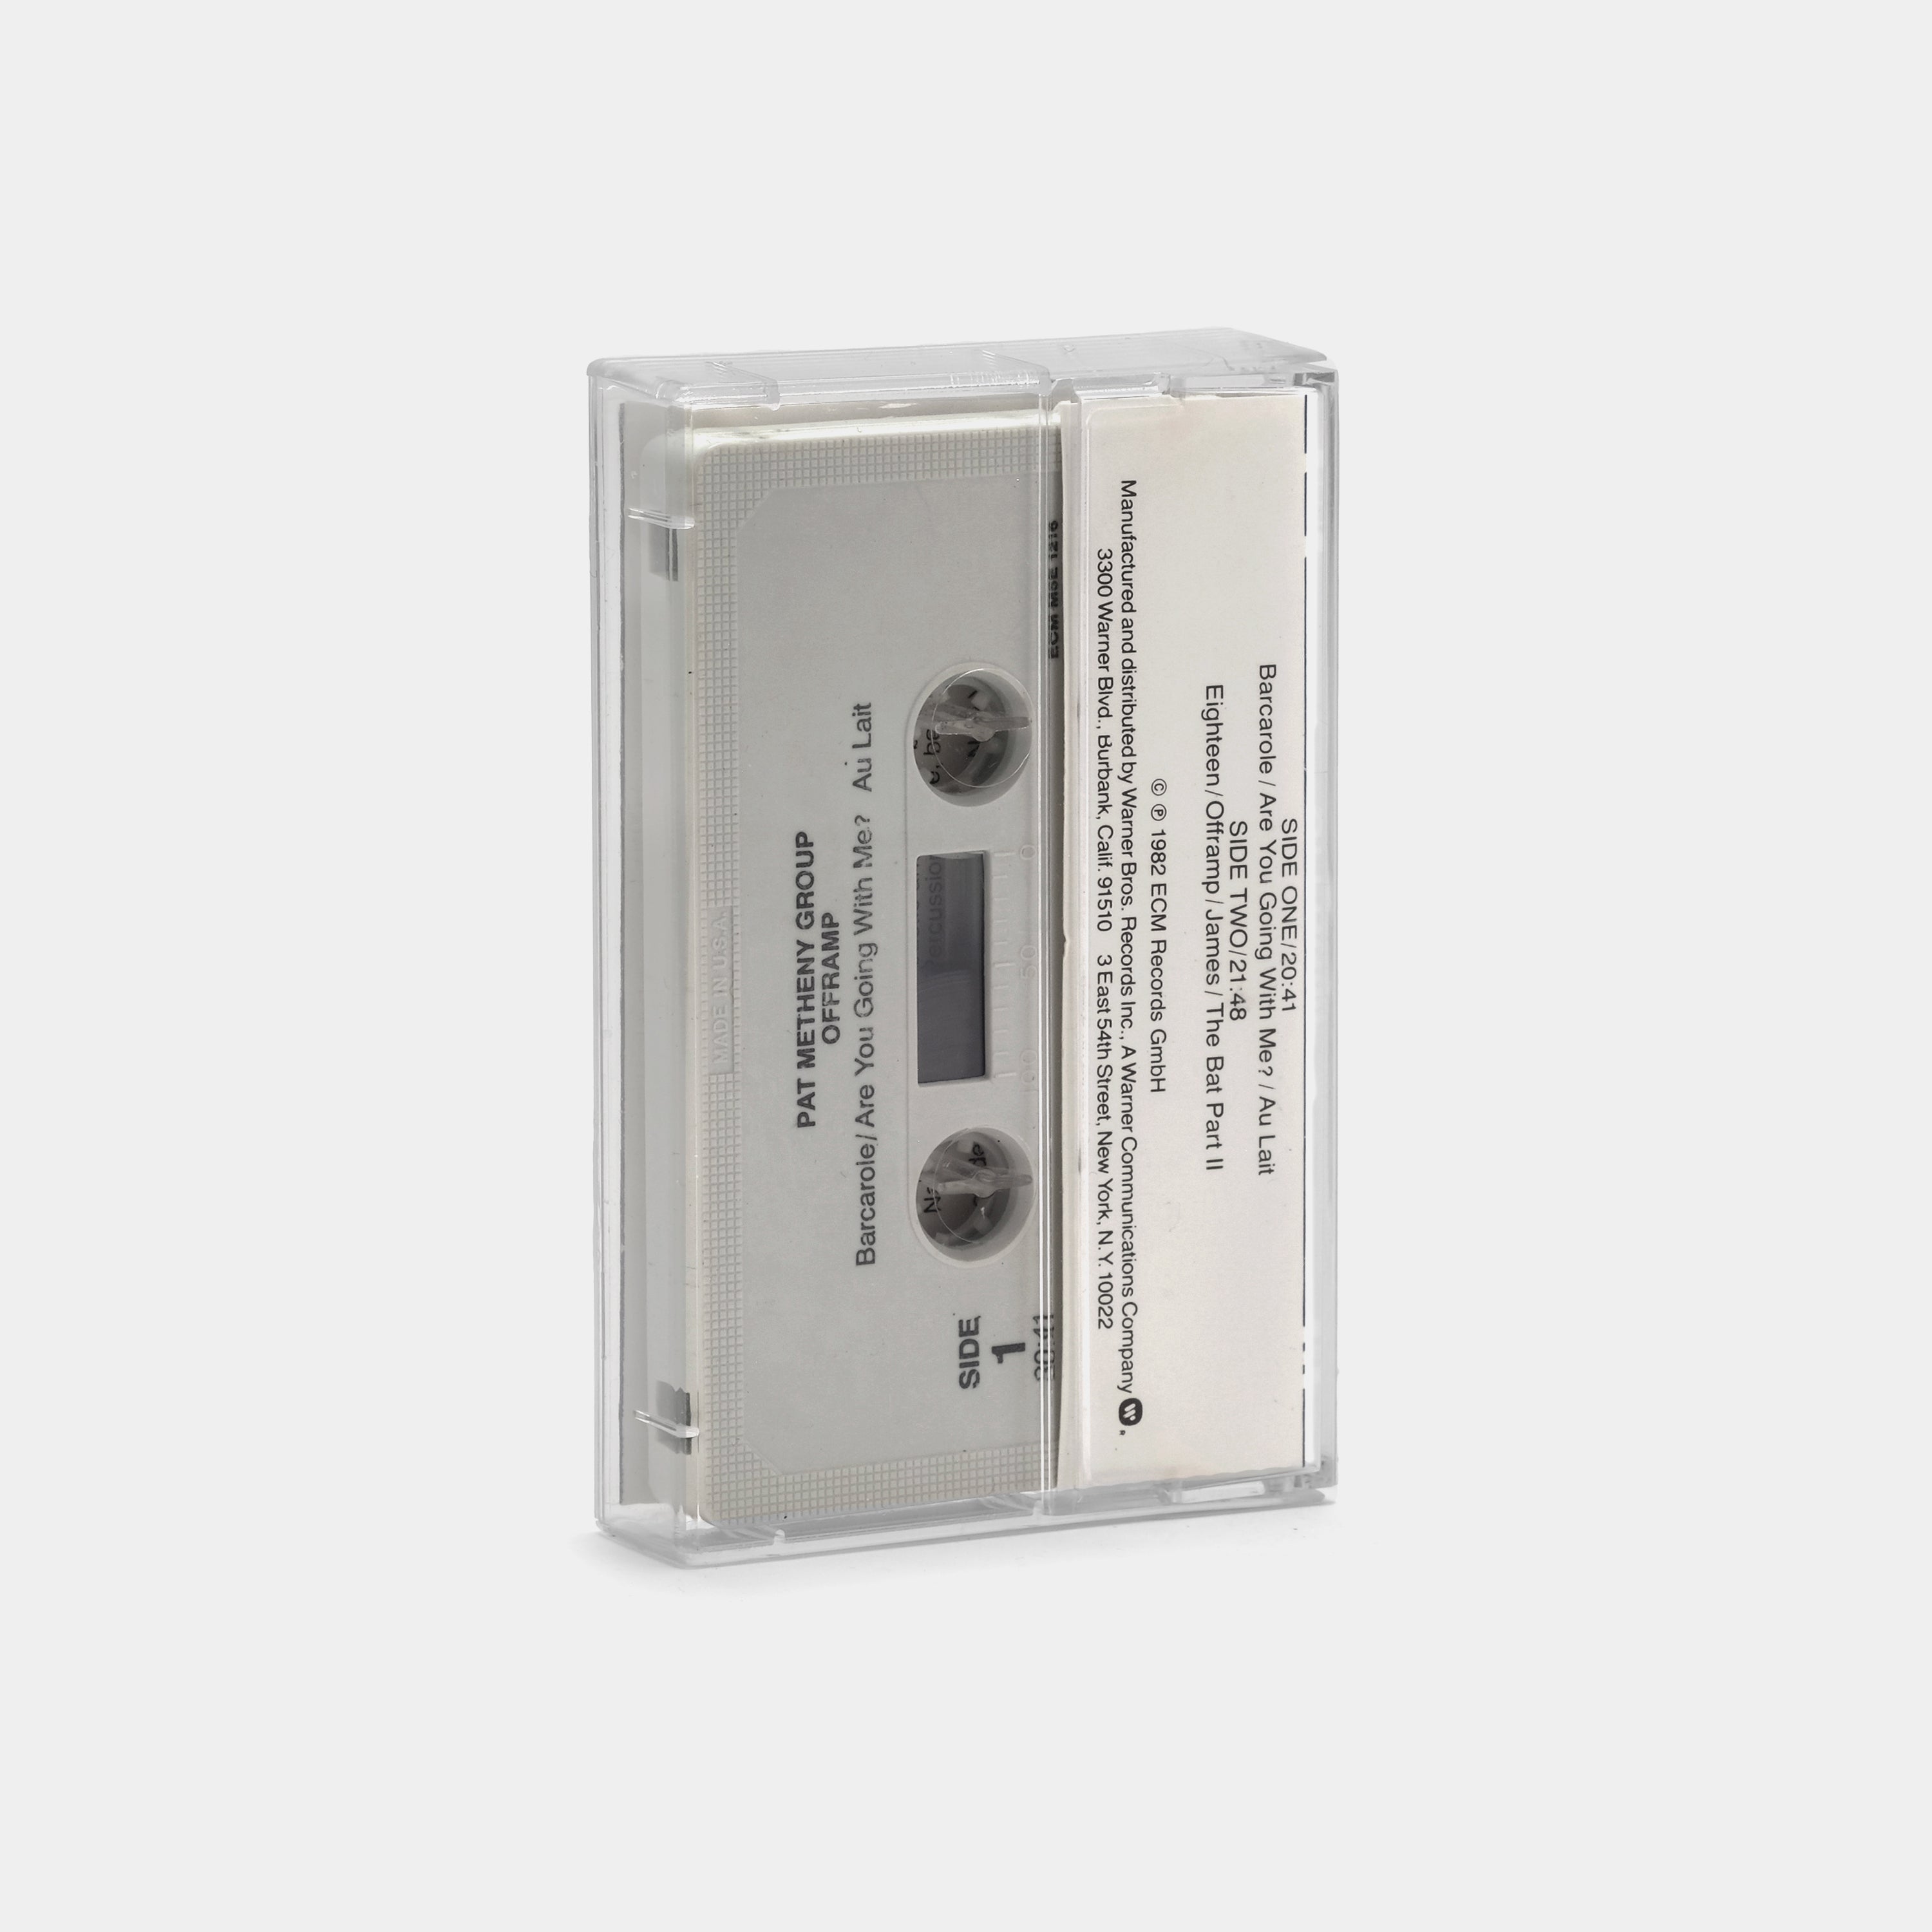 Pat Metheny Group - Offramp Cassette Tape